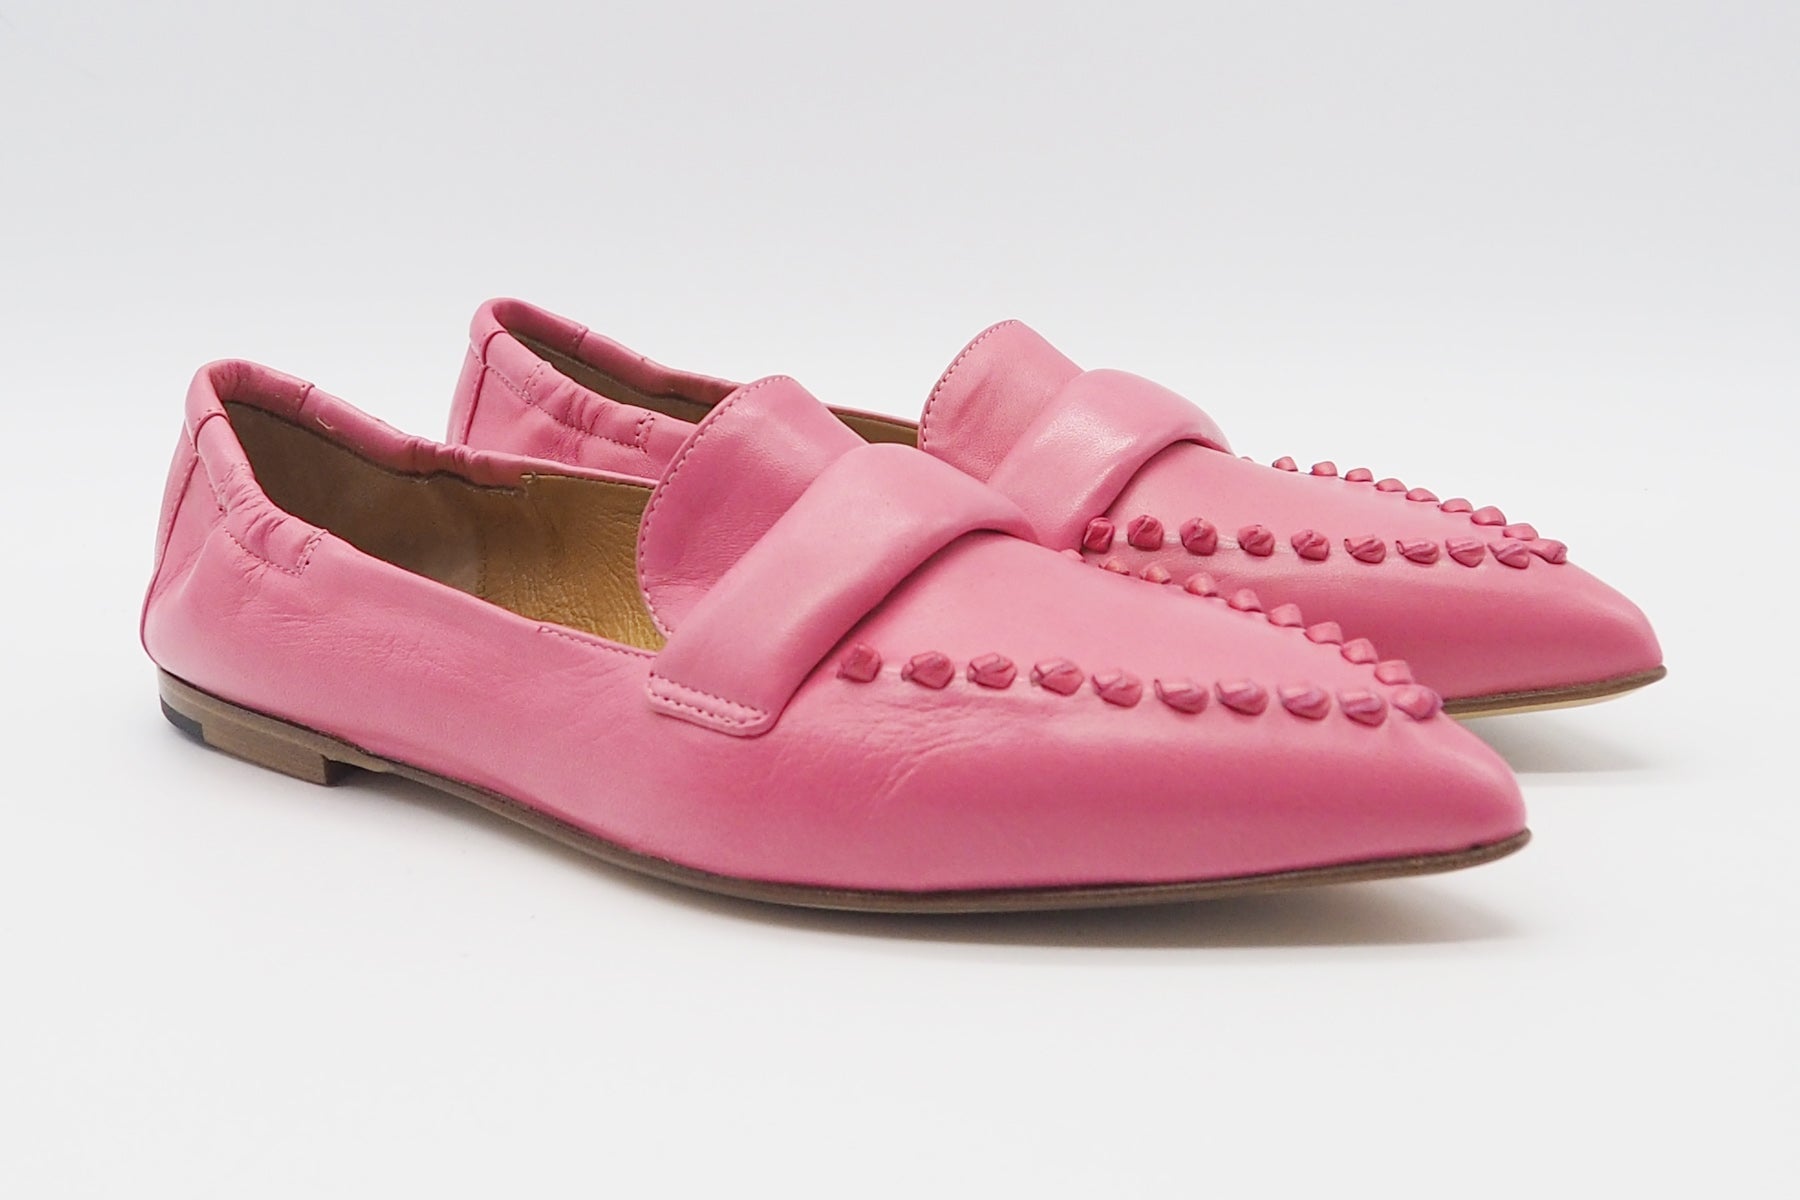 Elegante Damen Loafer aus Glattleder in Bubble Gum Pink Damen Loafers & Schnürer Pomme D'or 